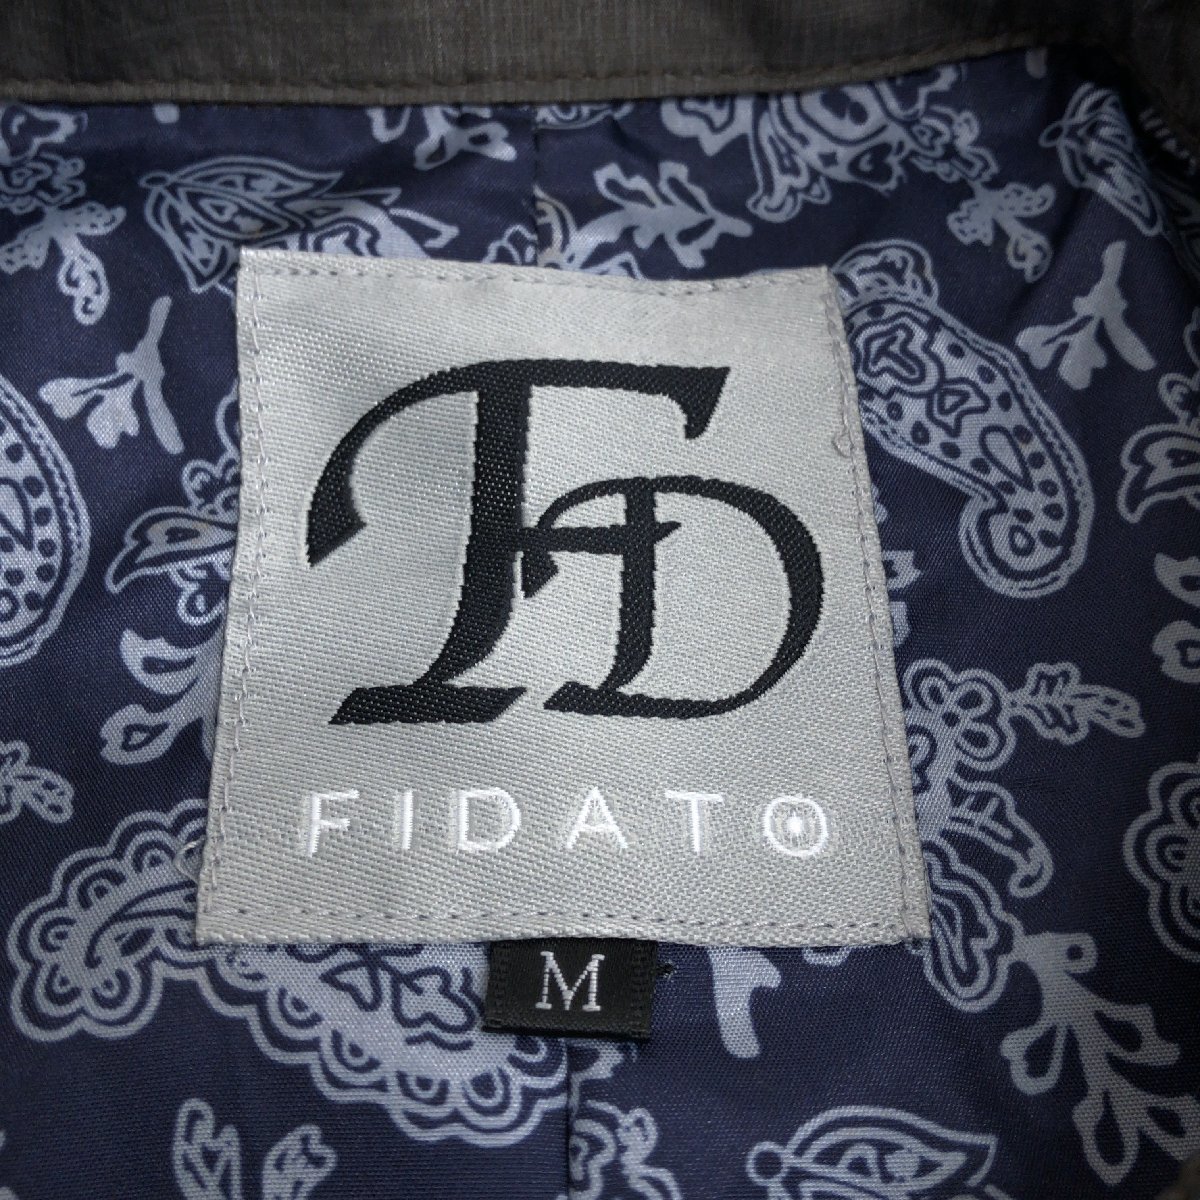 ●美品 FIDATO ファダート 背抜き M-65 フィールドジャケット M オリーブ系 カーキ系 ブルゾン 国内正規品 メンズ 紳士_画像3